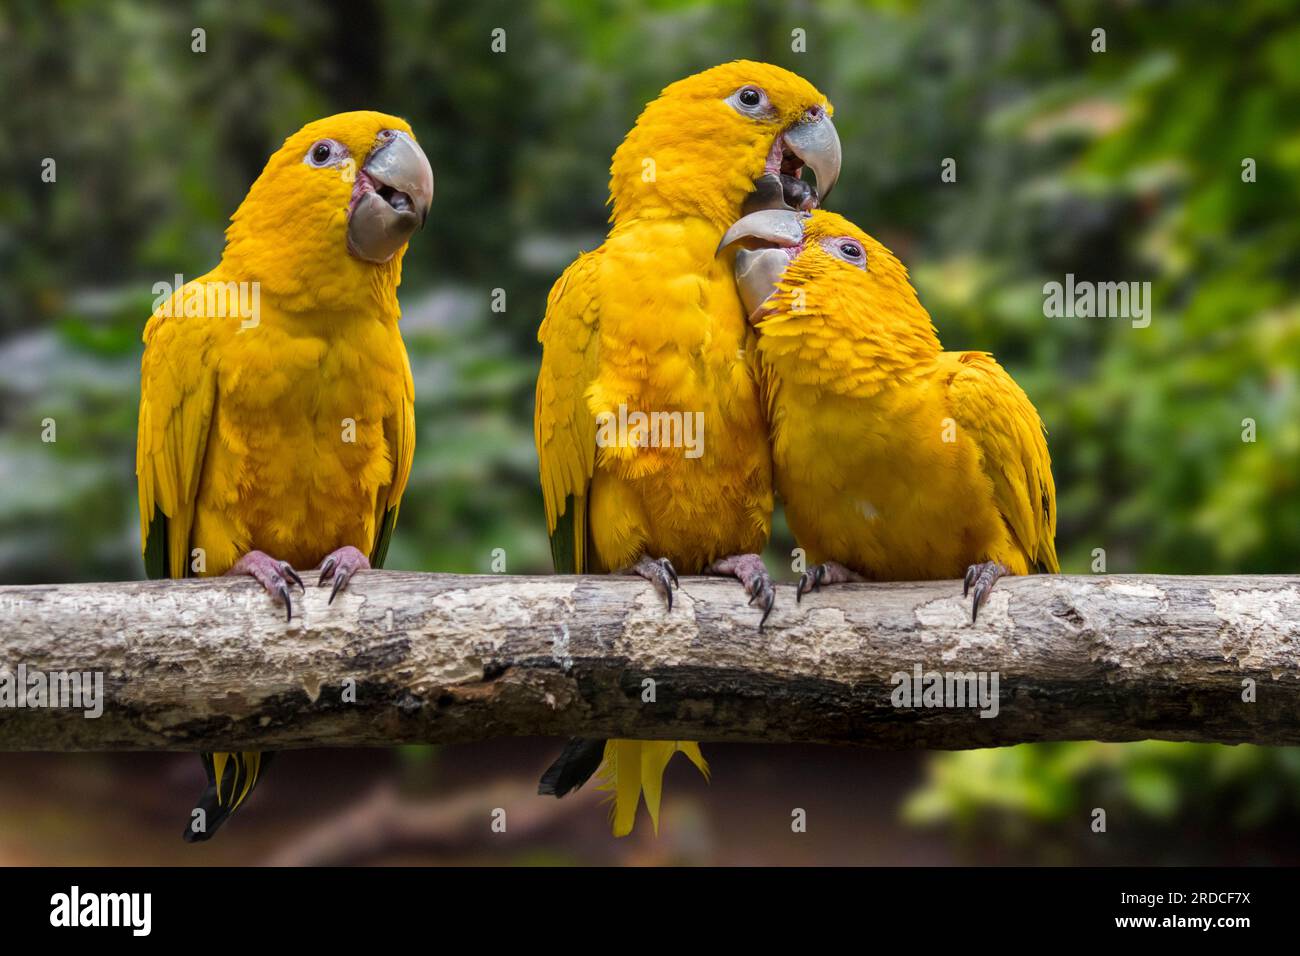 Tre pappagalli dorati/conure dorate (Guaruba guarouba) arroccati su un albero, pappagallo neotropicale originario del bacino amazzonico dell'interno del Brasile settentrionale Foto Stock